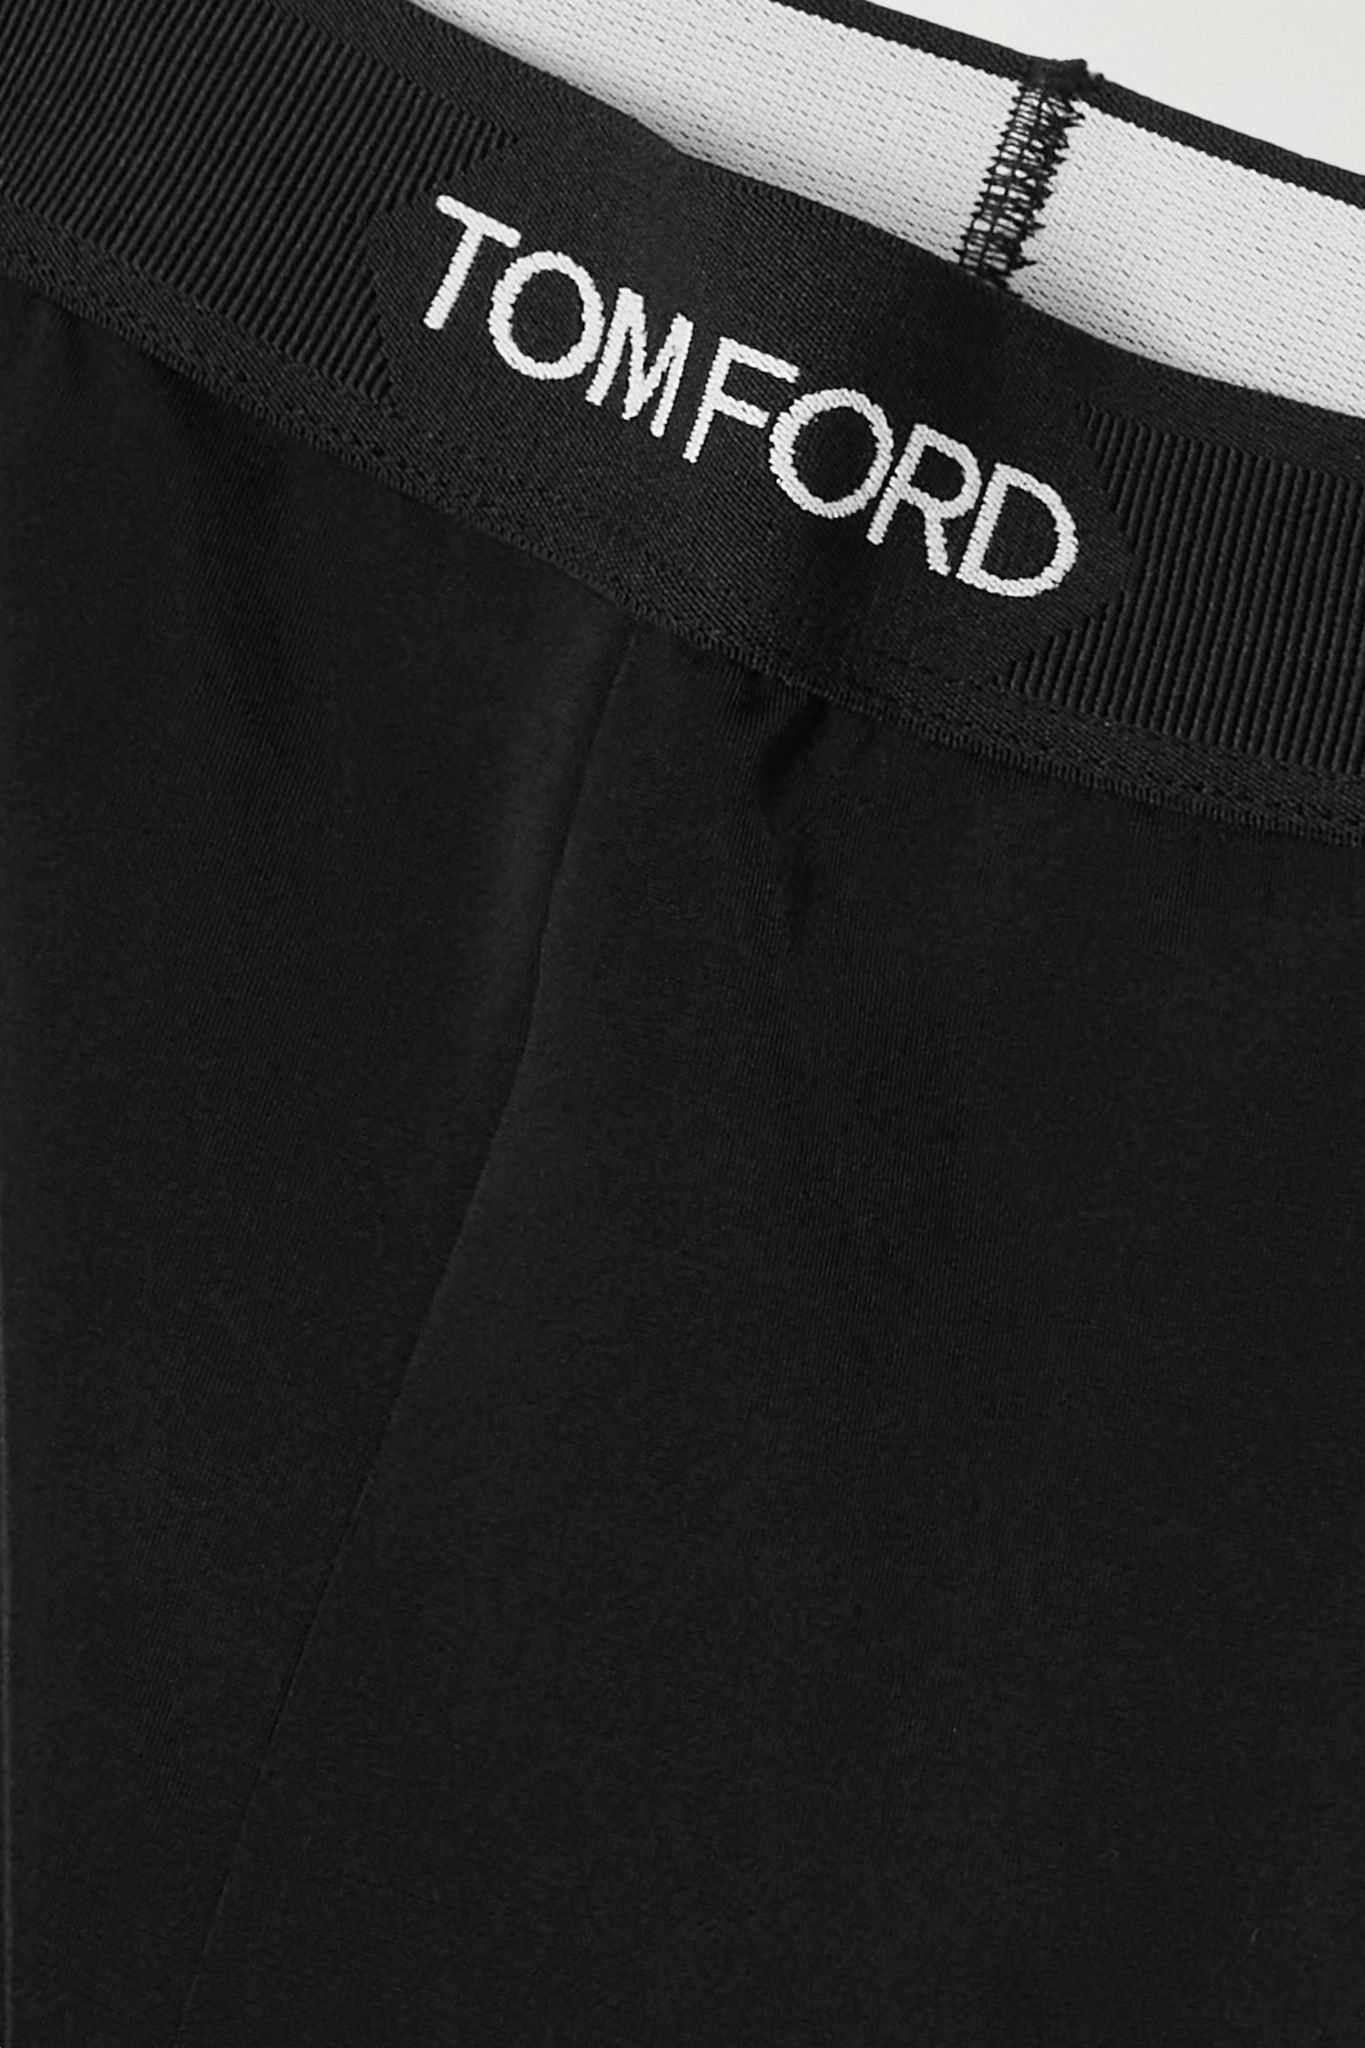 Tom Ford Jacquard Leggings in Black